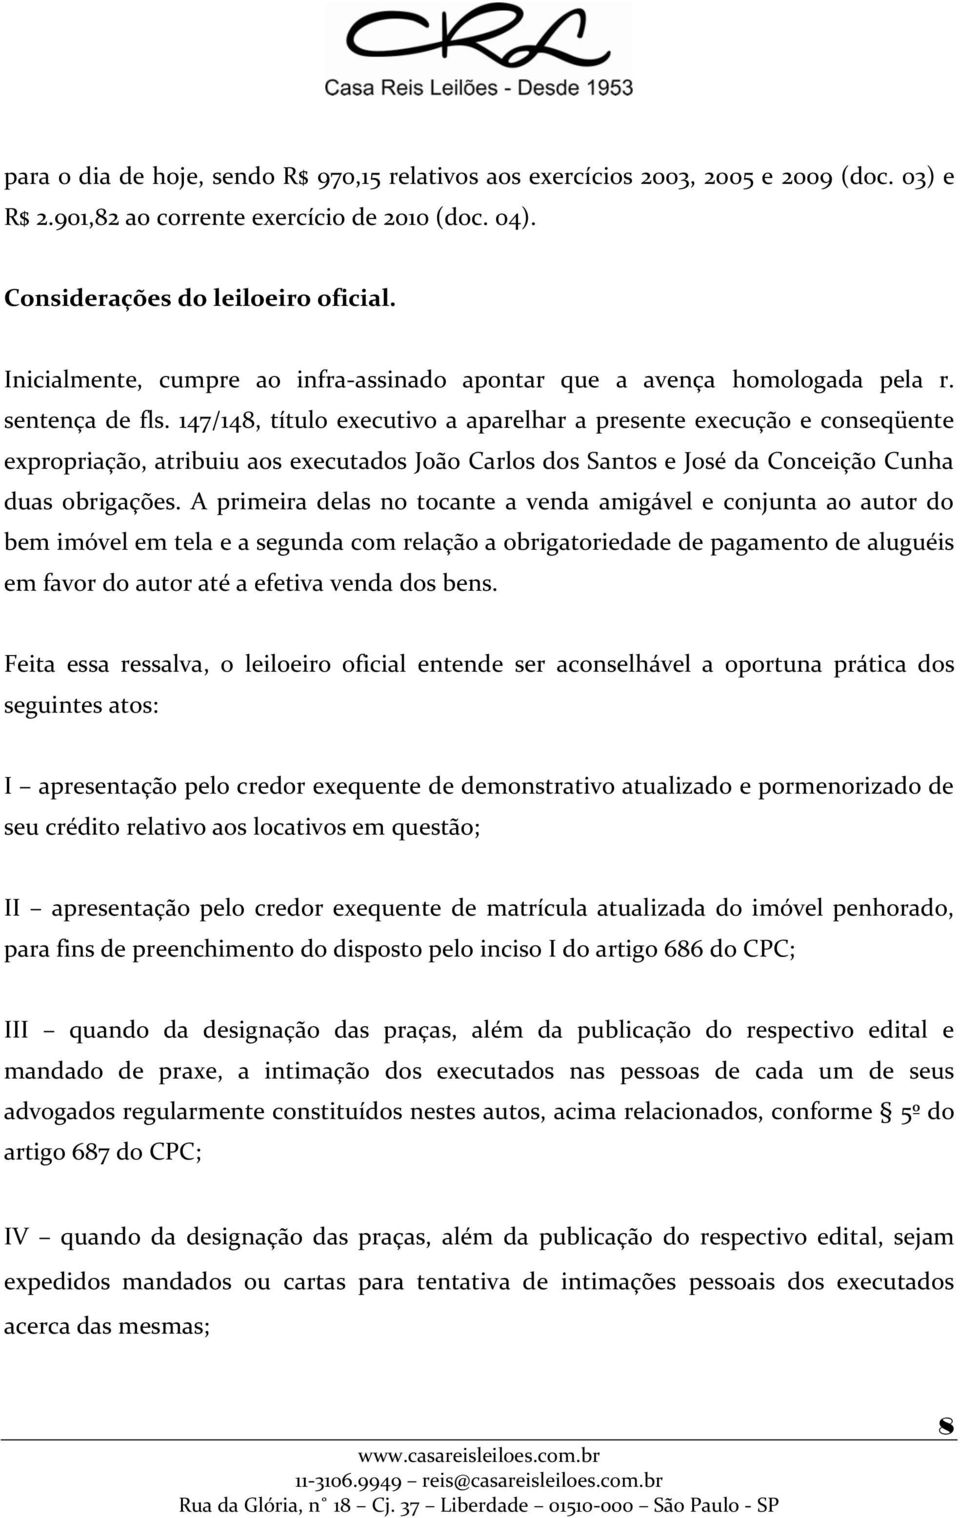 147/148, título executivo a aparelhar a presente execução e conseqüente expropriação, atribuiu aos executados João Carlos dos Santos e José da Conceição Cunha duas obrigações.